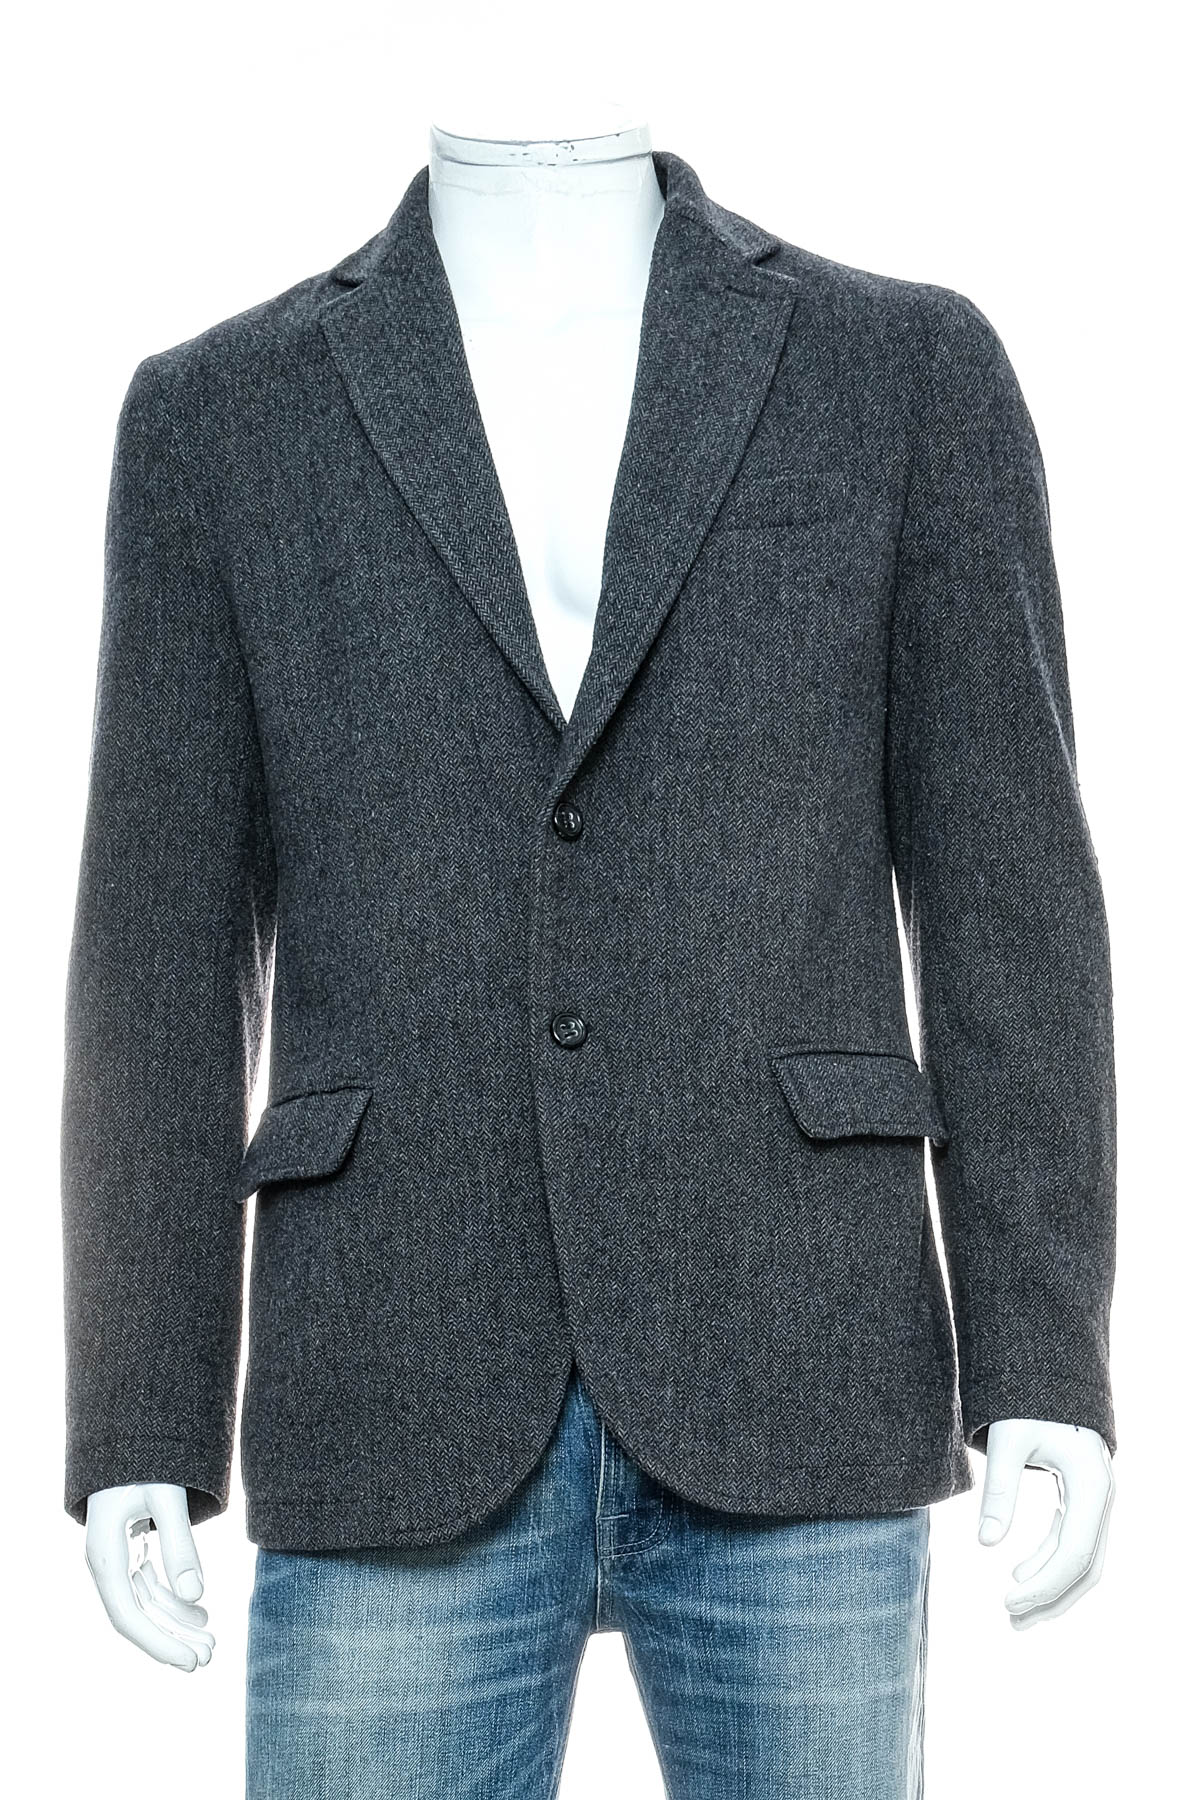 Men's coat - Stile Benetton - 0